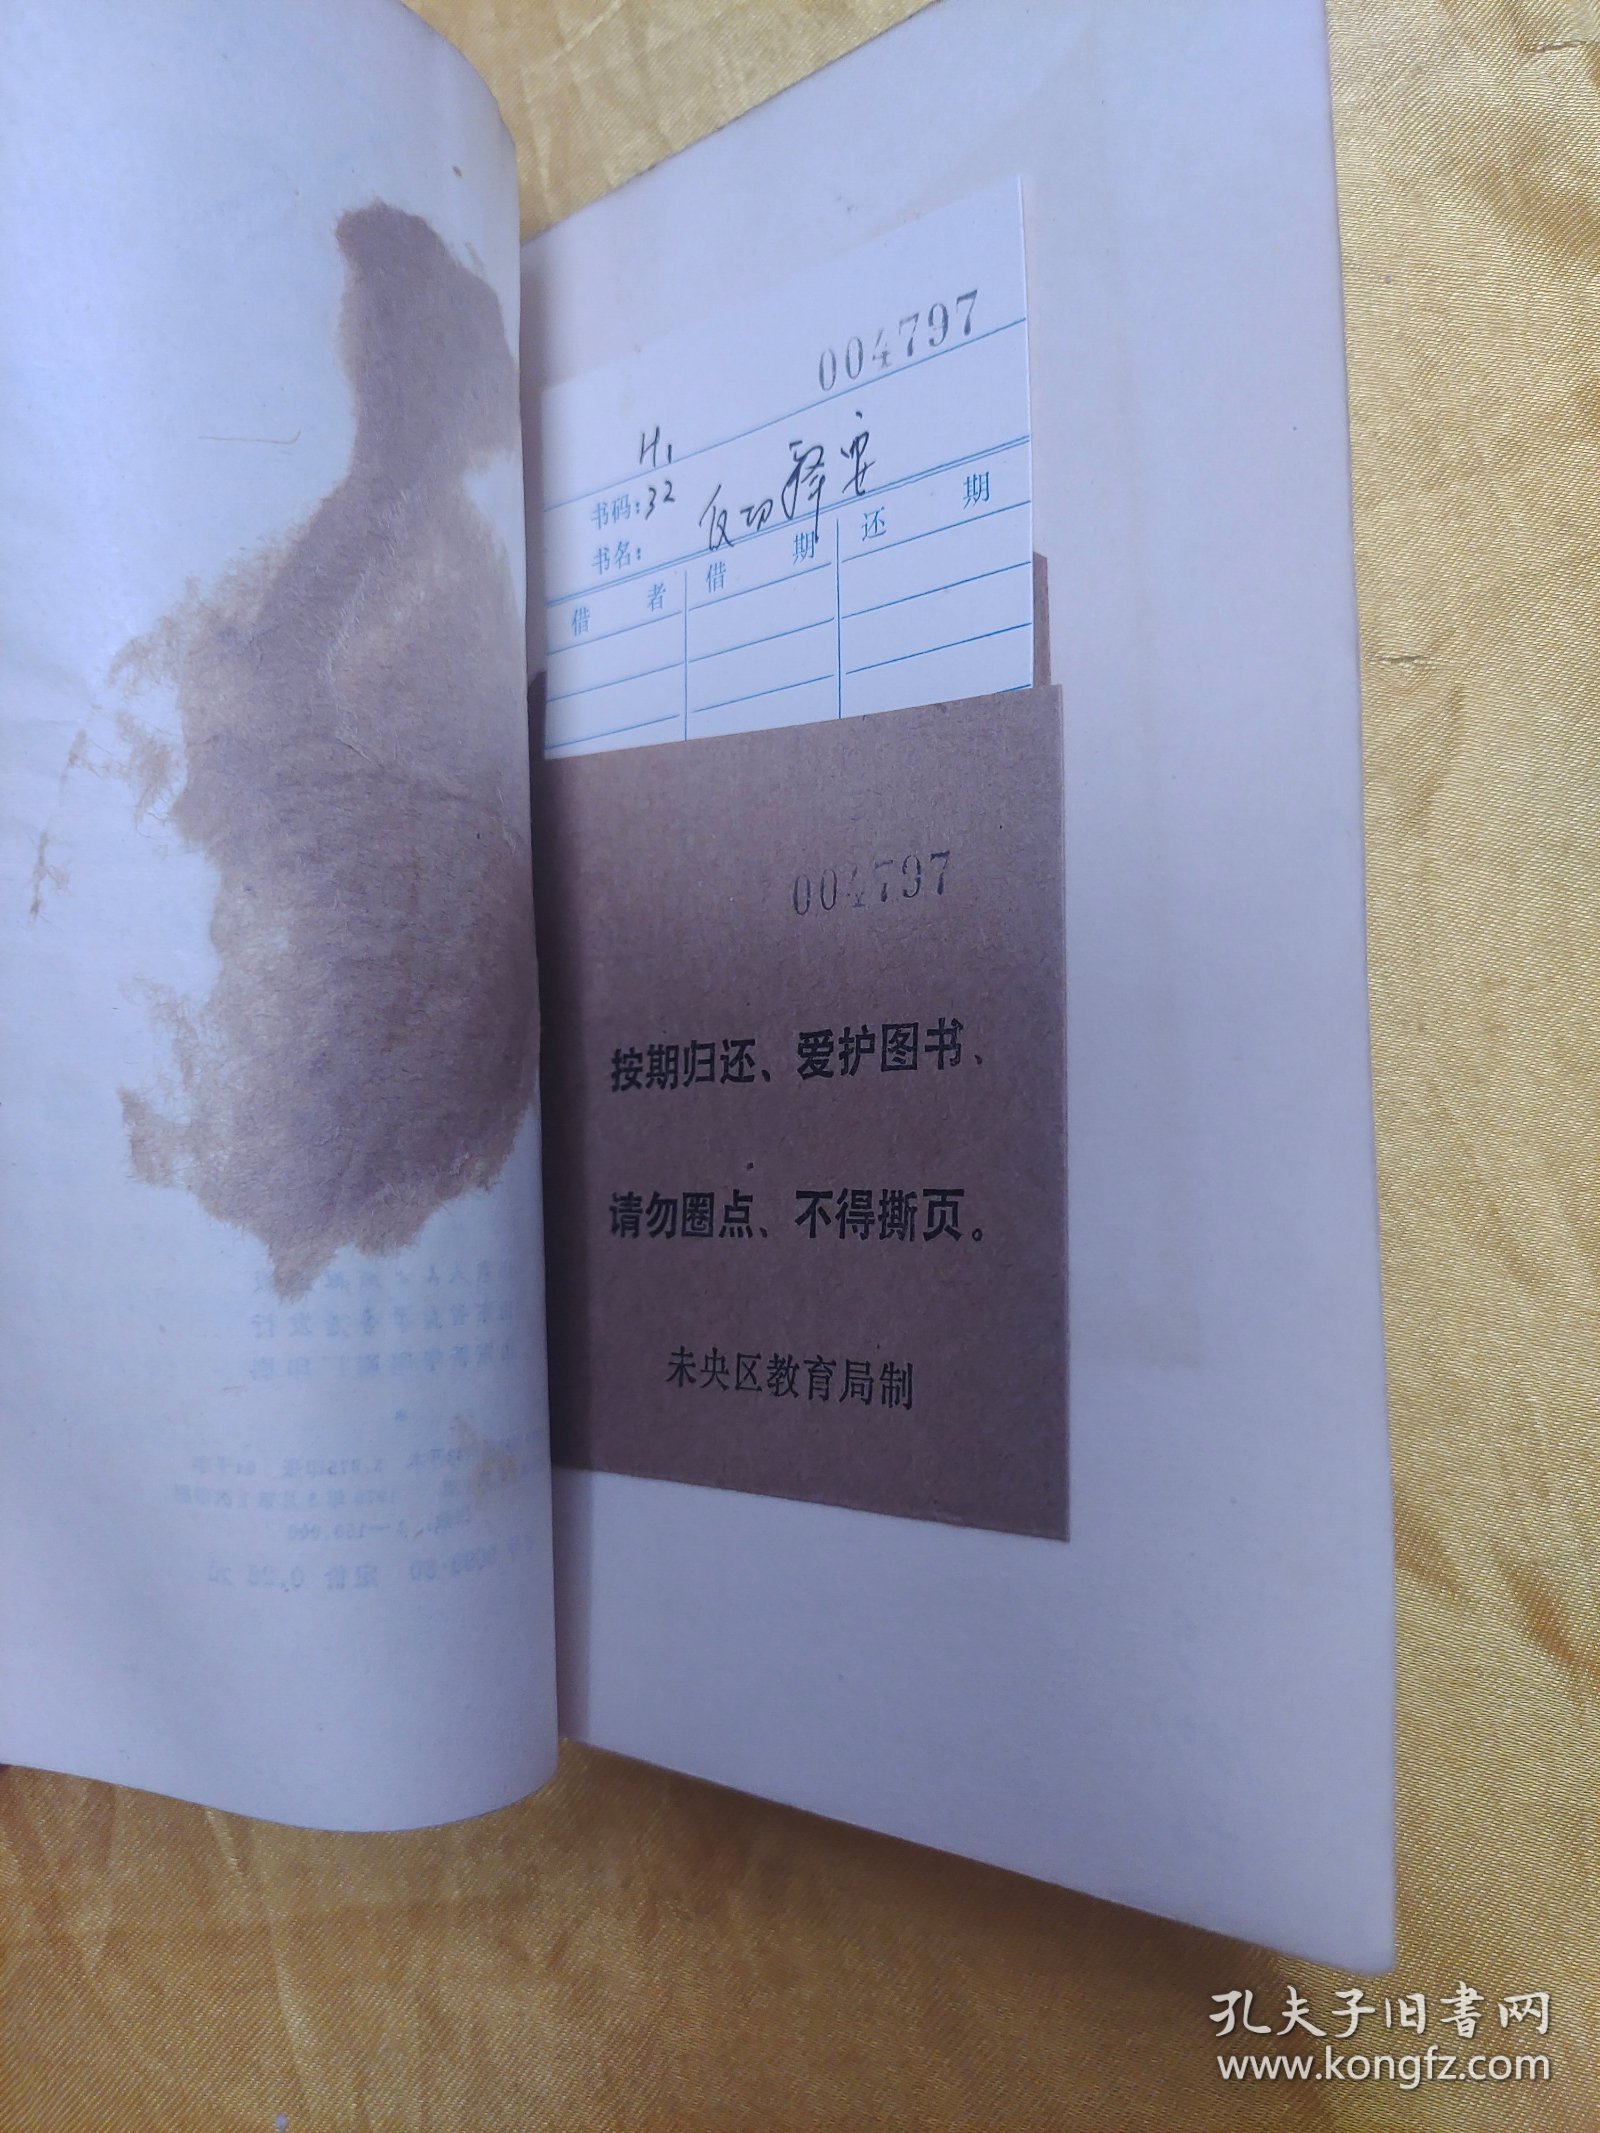 汉语语言学丛书 ：友切释要